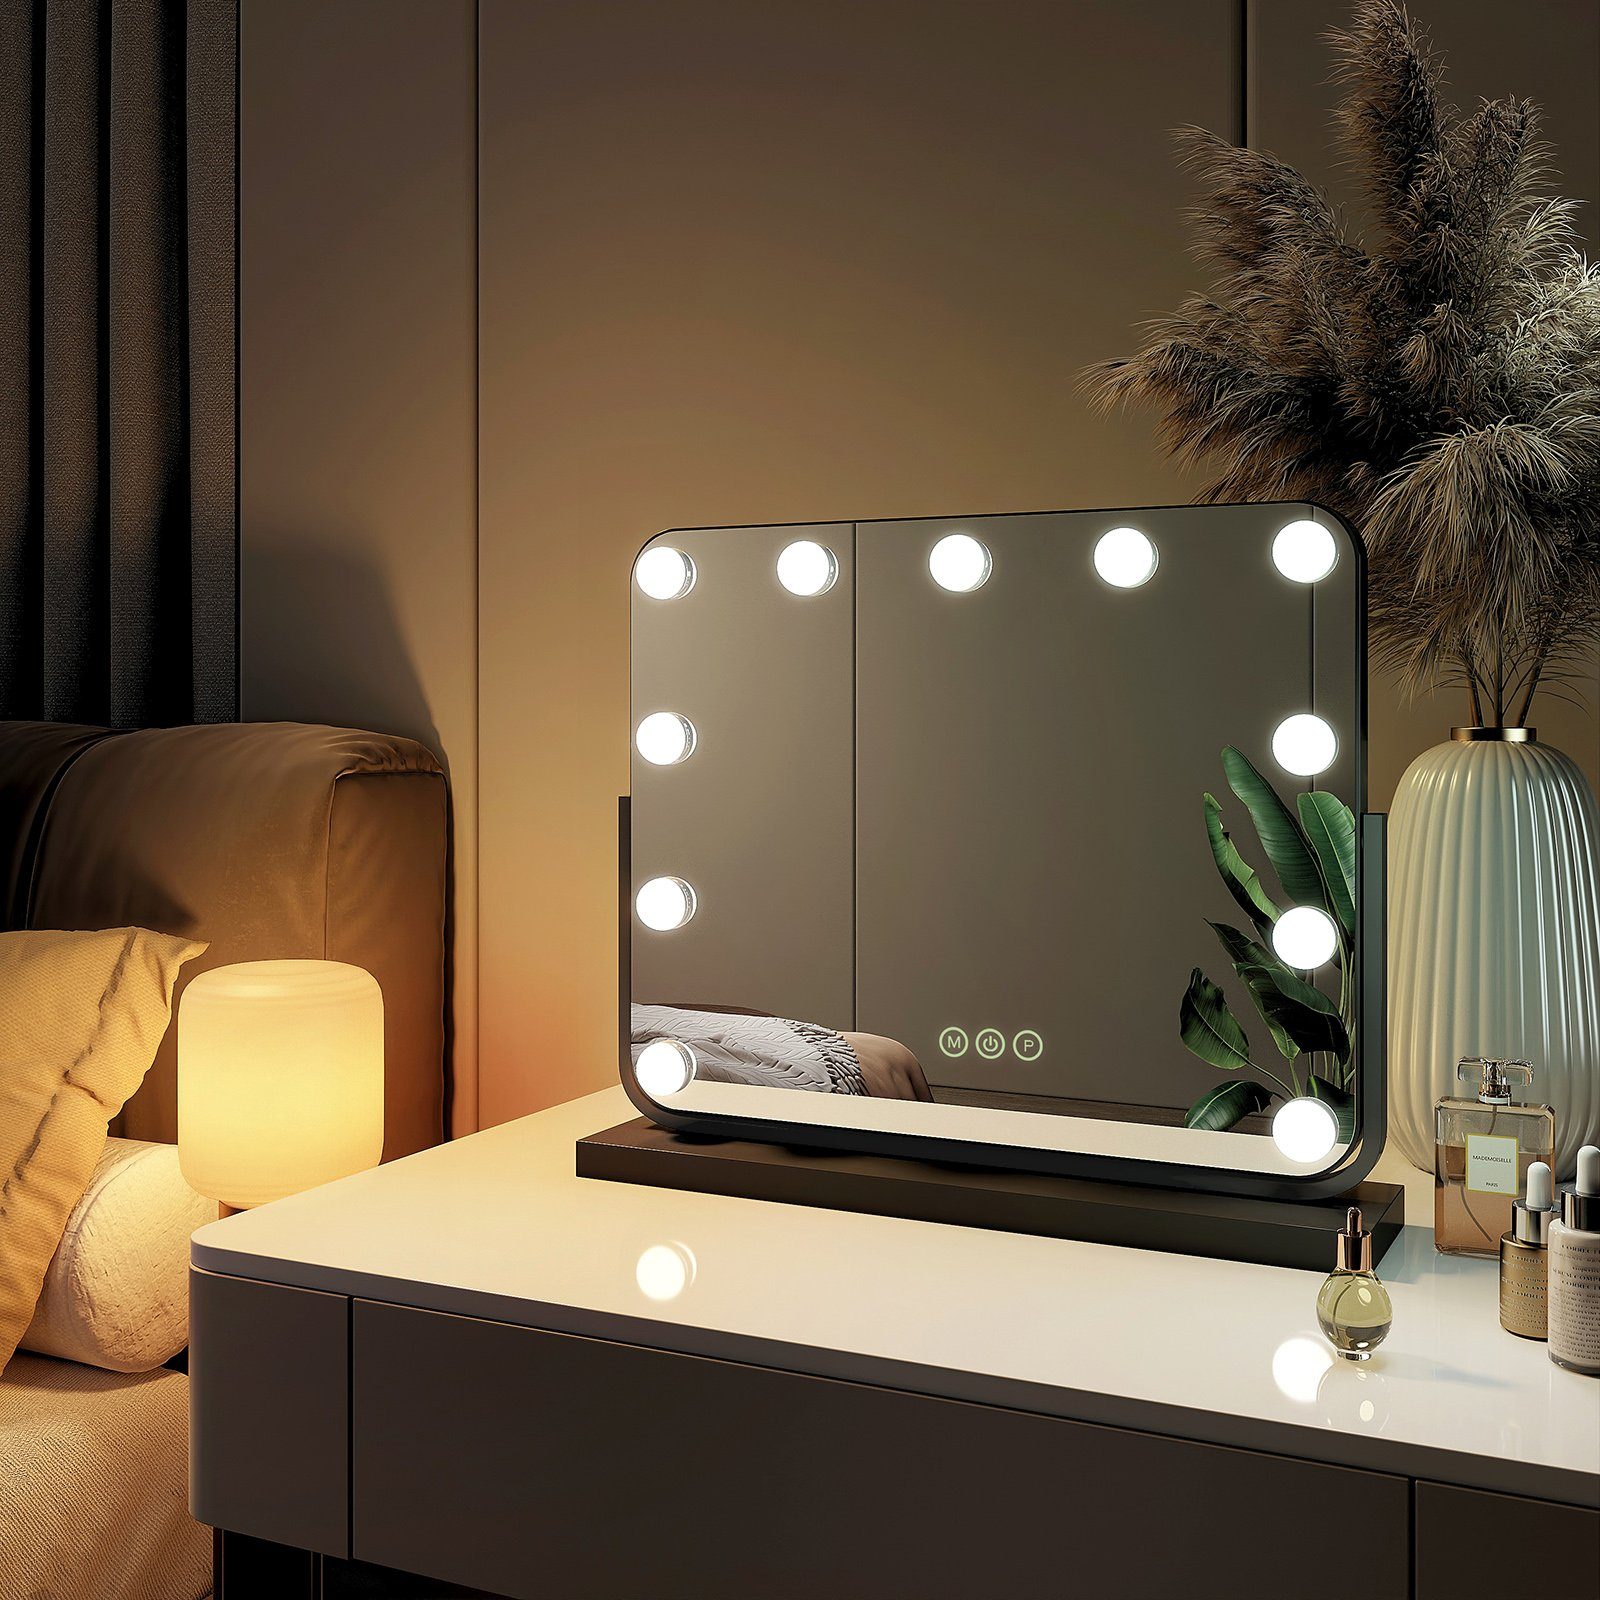 EMKE Kosmetikspiegel Hollywood Spiegel mit Beleuchtung 360 ° Drehbar Tischspiegel, 3 Farbe Licht,Dimmbar,Speicherfunktion,7 x Vergrößerungsspiegel Schwarz